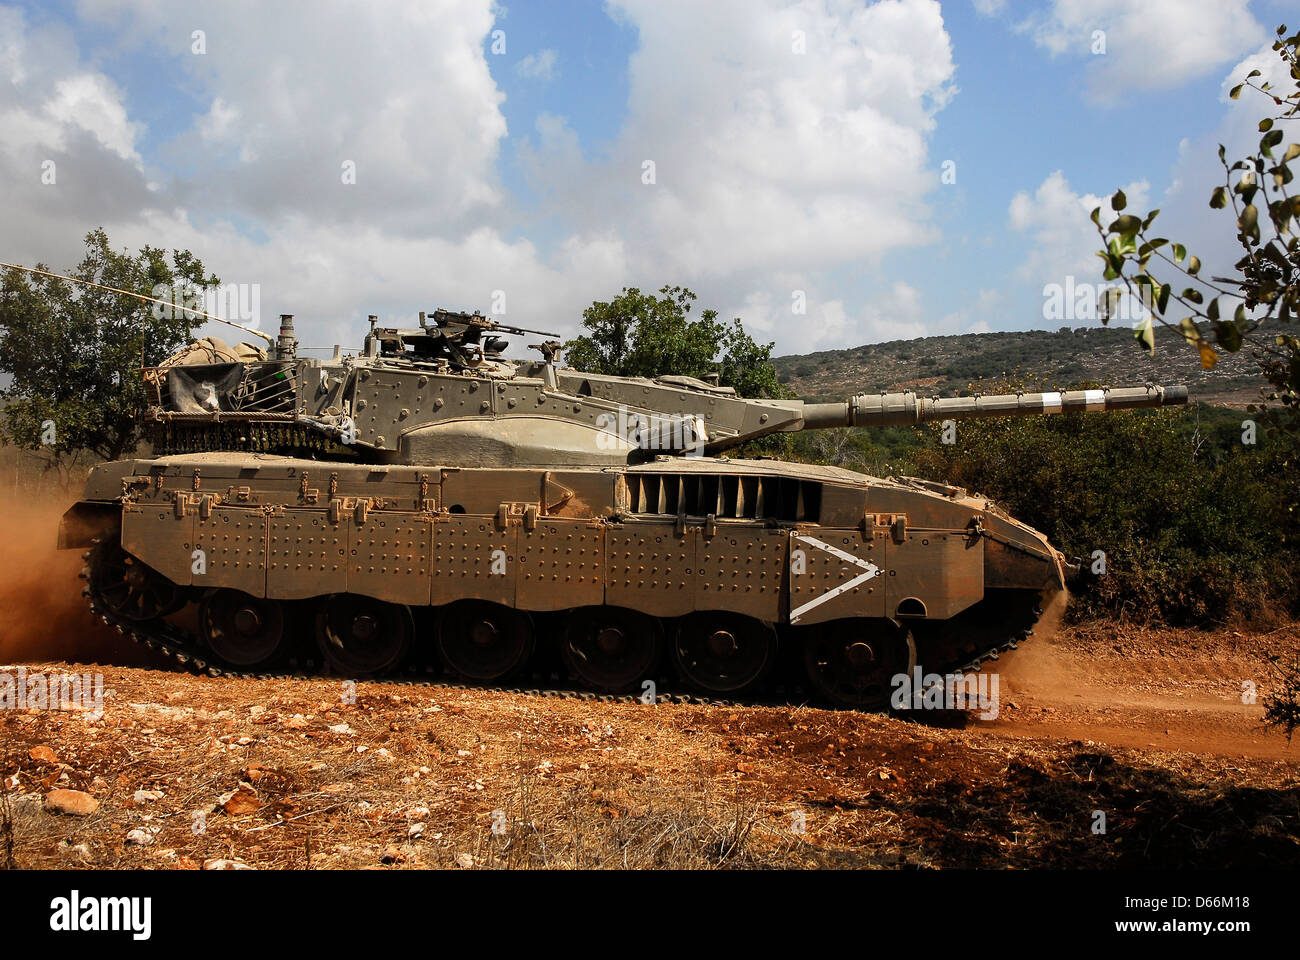 Un char israélien faisant manoeuvrer dans les champs ouverts Banque D'Images